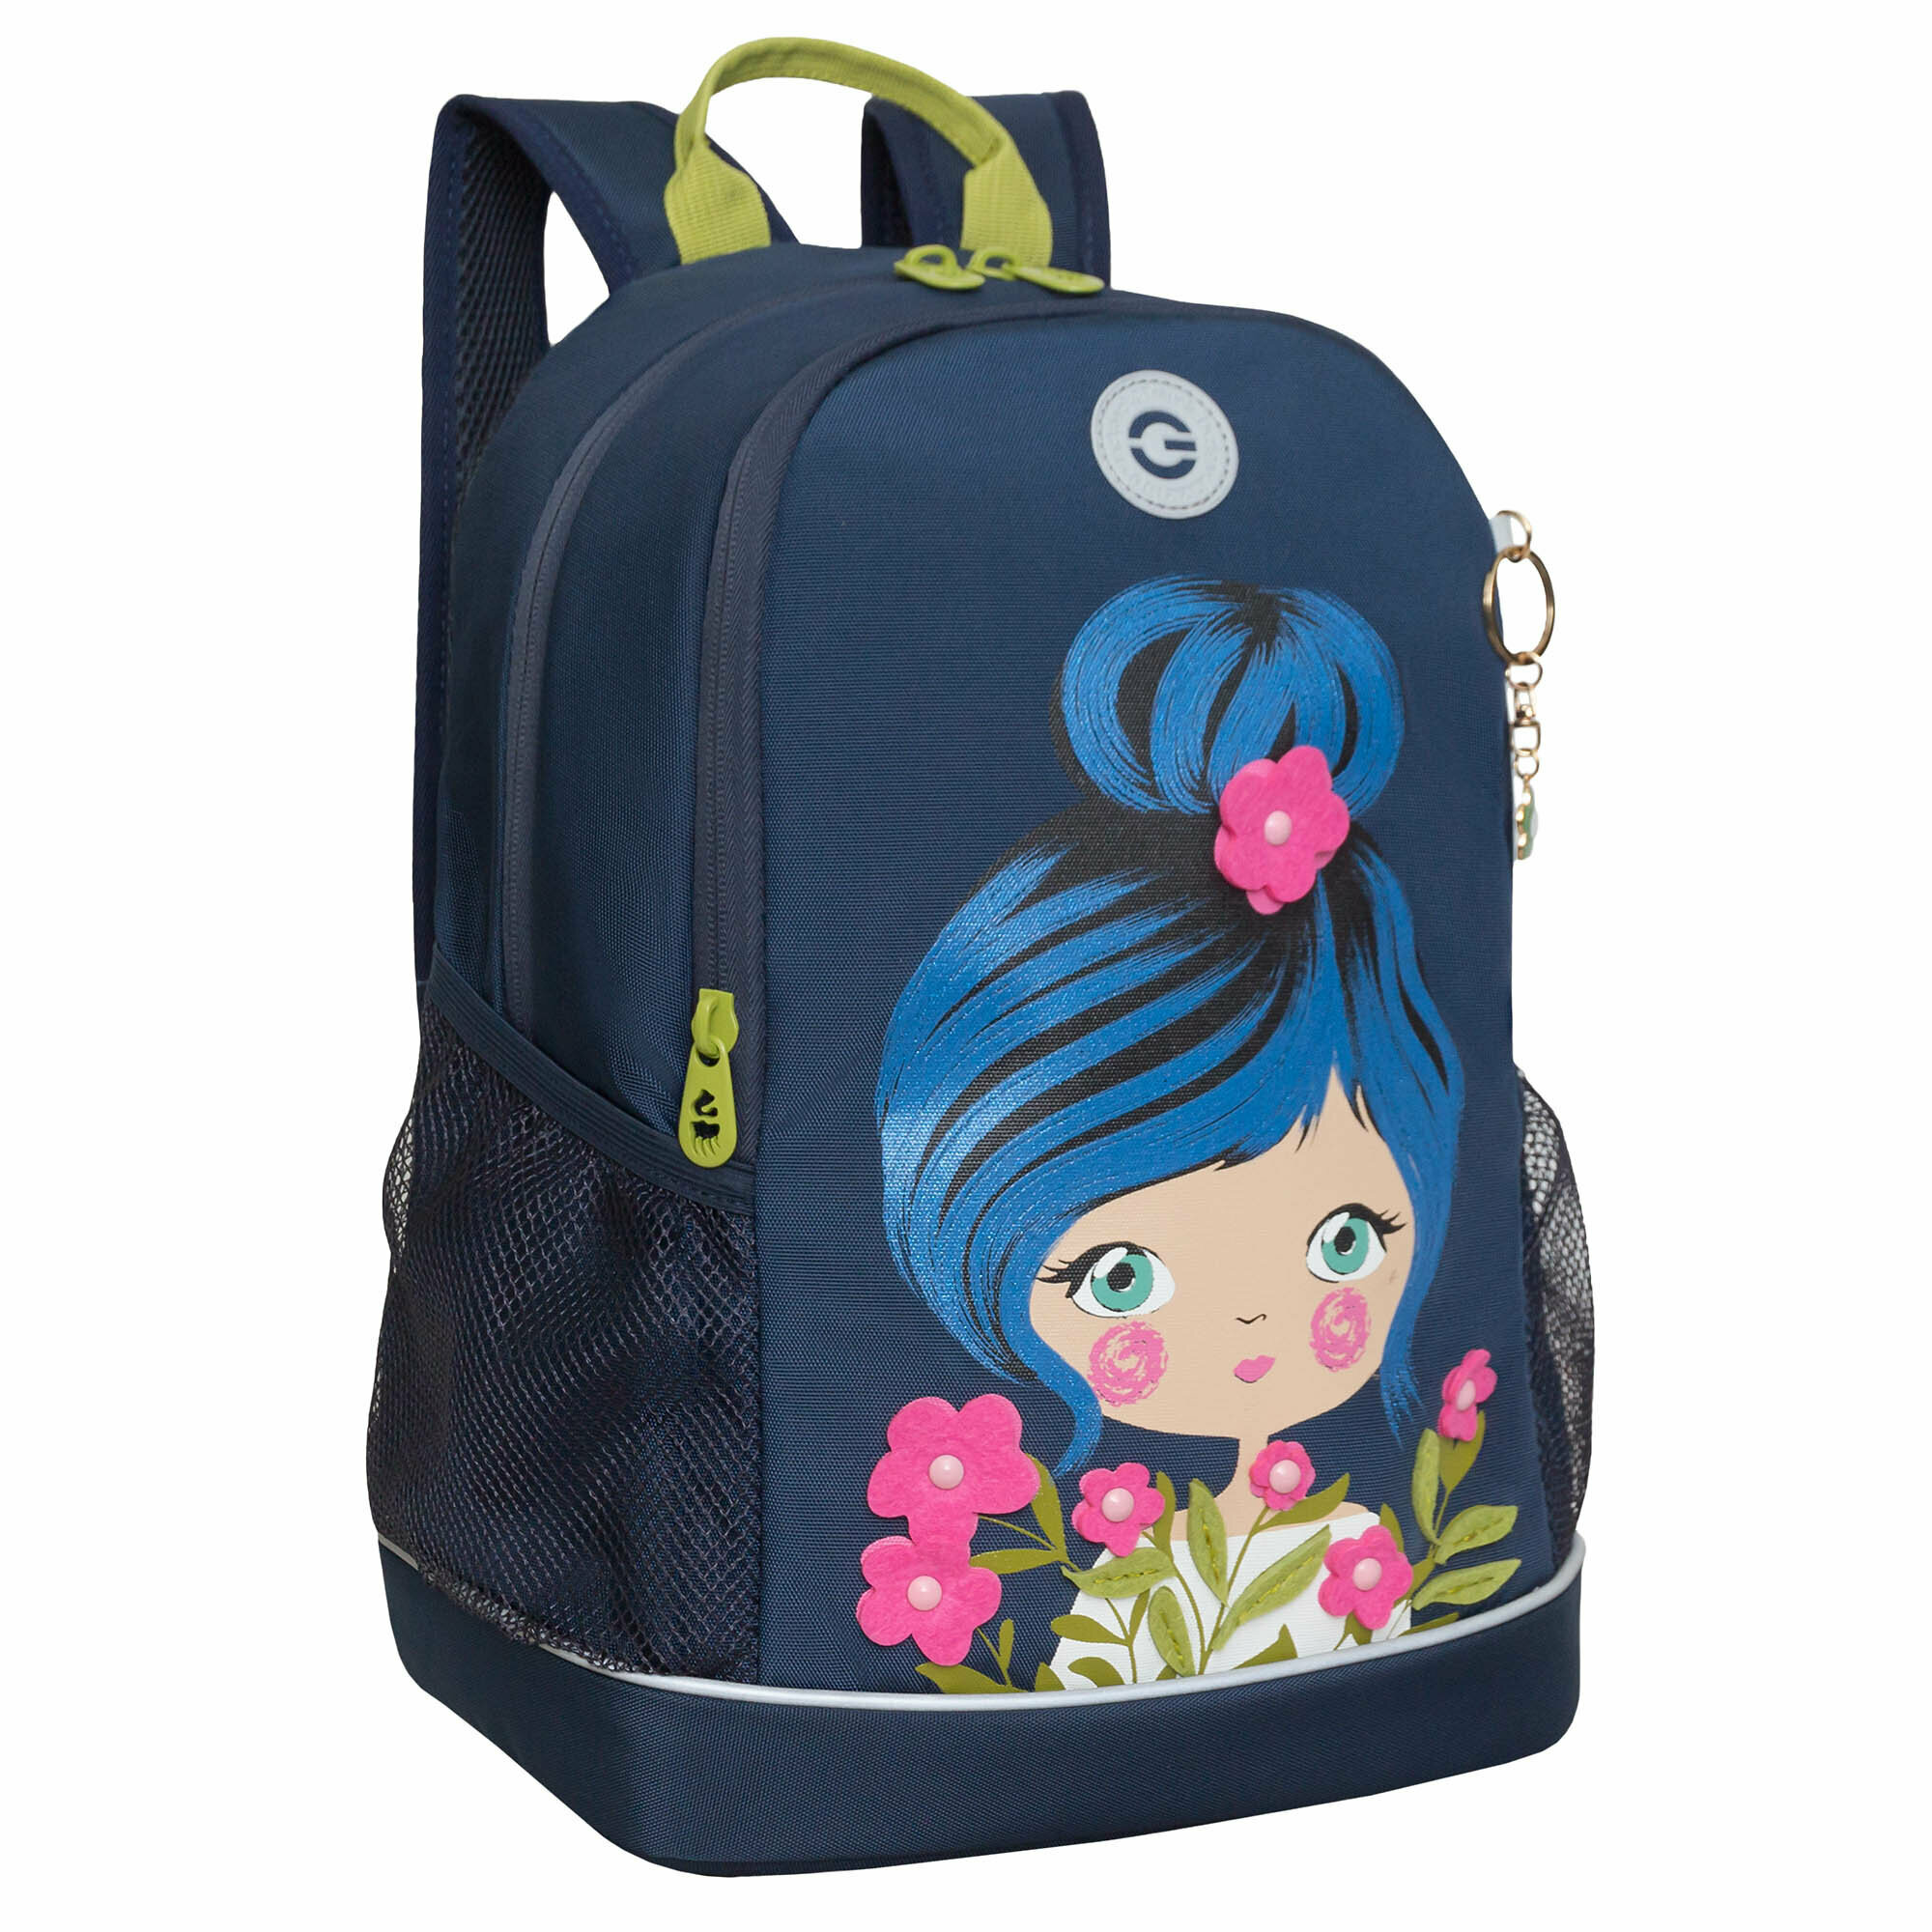 Рюкзак школьный GRIZZLY с карманом для ноутбука 13", жесткой спинкой, двумя отделениями, для девочки RG-363-3/1